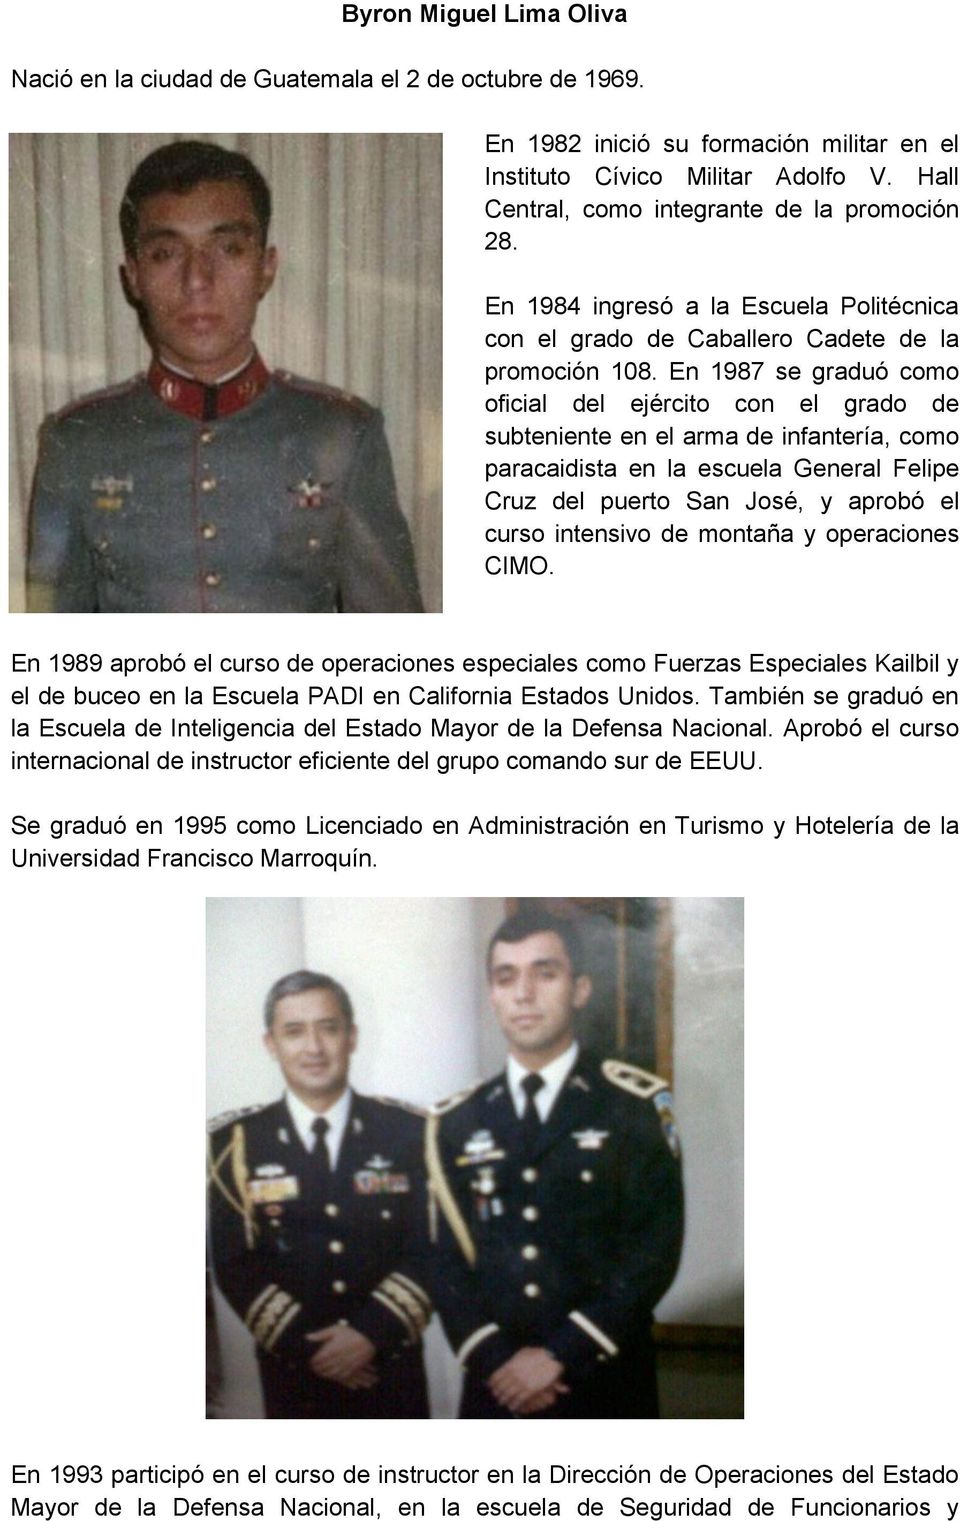 En 1987 se graduó como oficial del ejército con el grado de subteniente en el arma de infantería, como paracaidista en la escuela General Felipe Cruz del puerto San José, y aprobó el curso intensivo